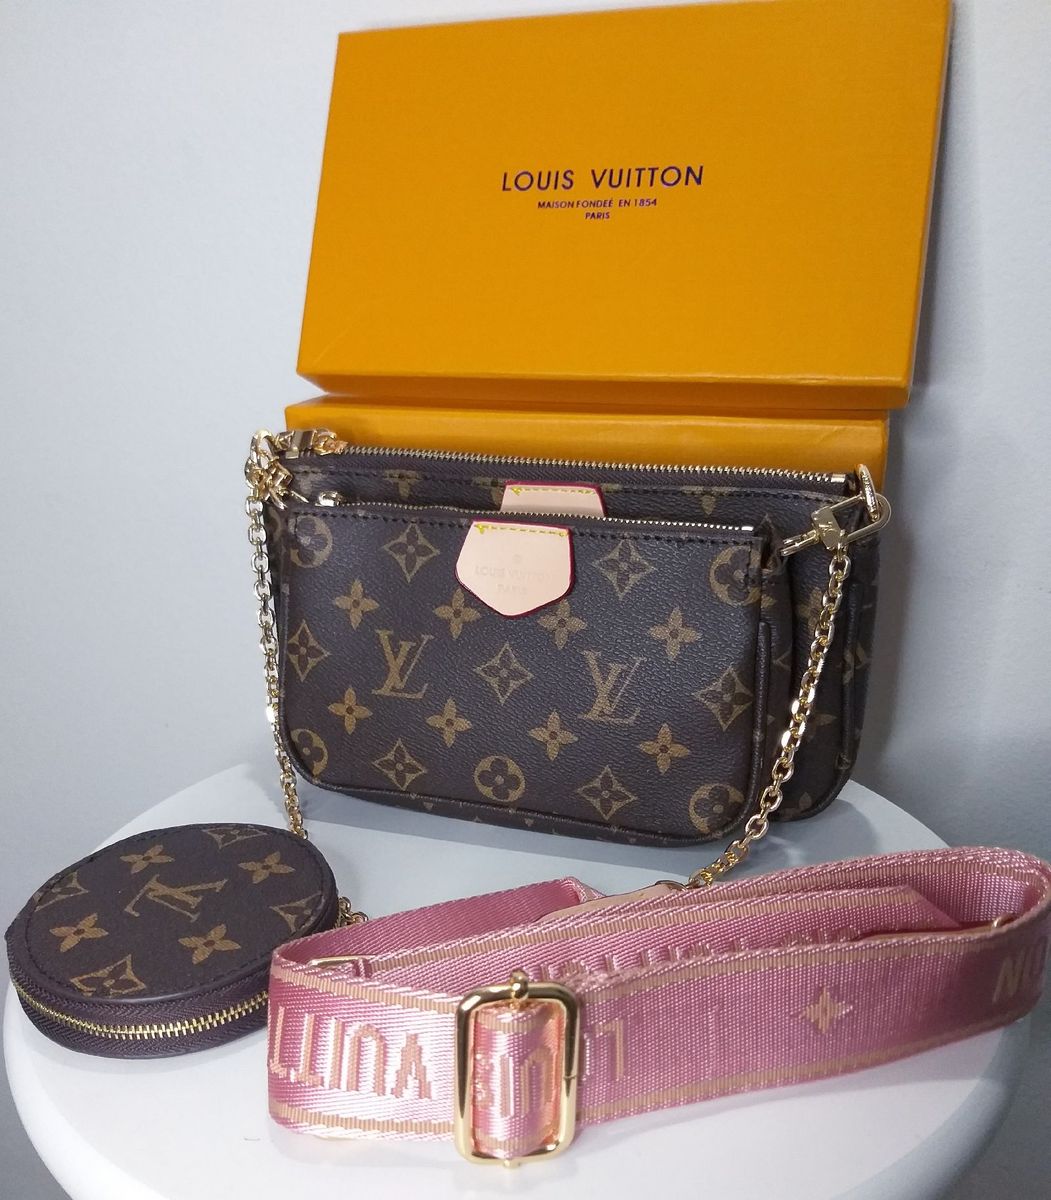 Preços baixos em Alças Cintas/Louis Vuitton, Bolsa para Mulheres